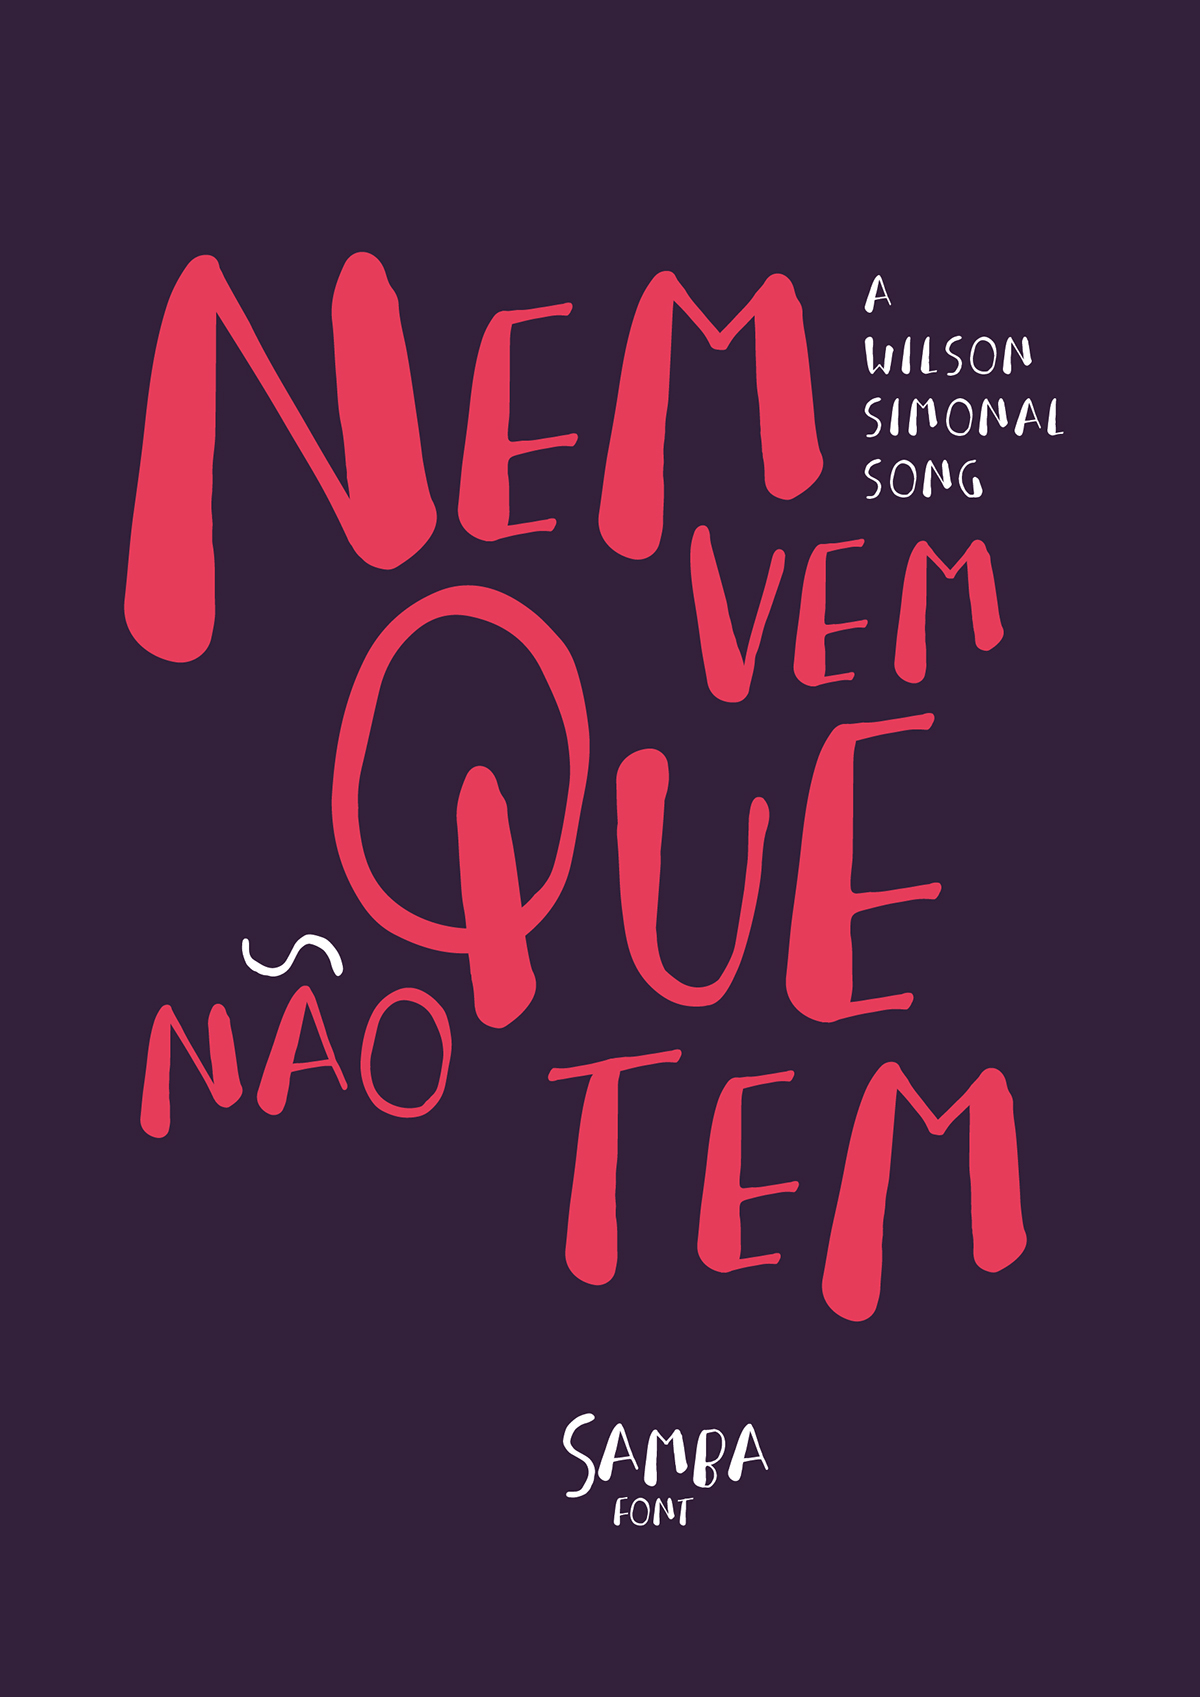 samba font illustrations color design wilson simonal poster font design Brazil Samba making of